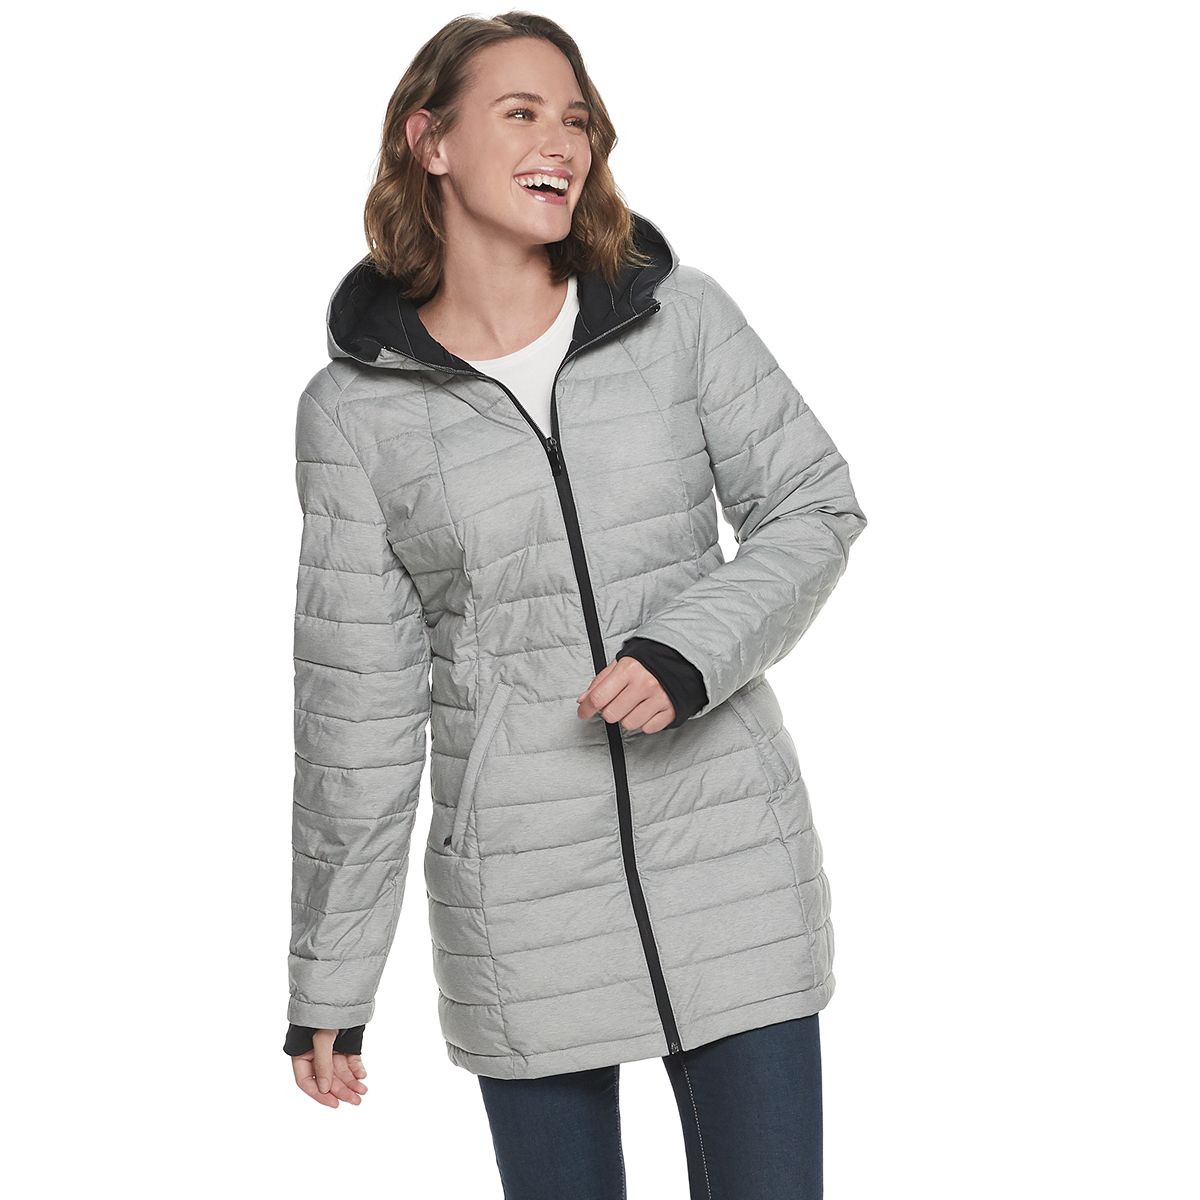 Women's ZeroXposur Jackets & Coats: Shop for Outwerwear Essentials 